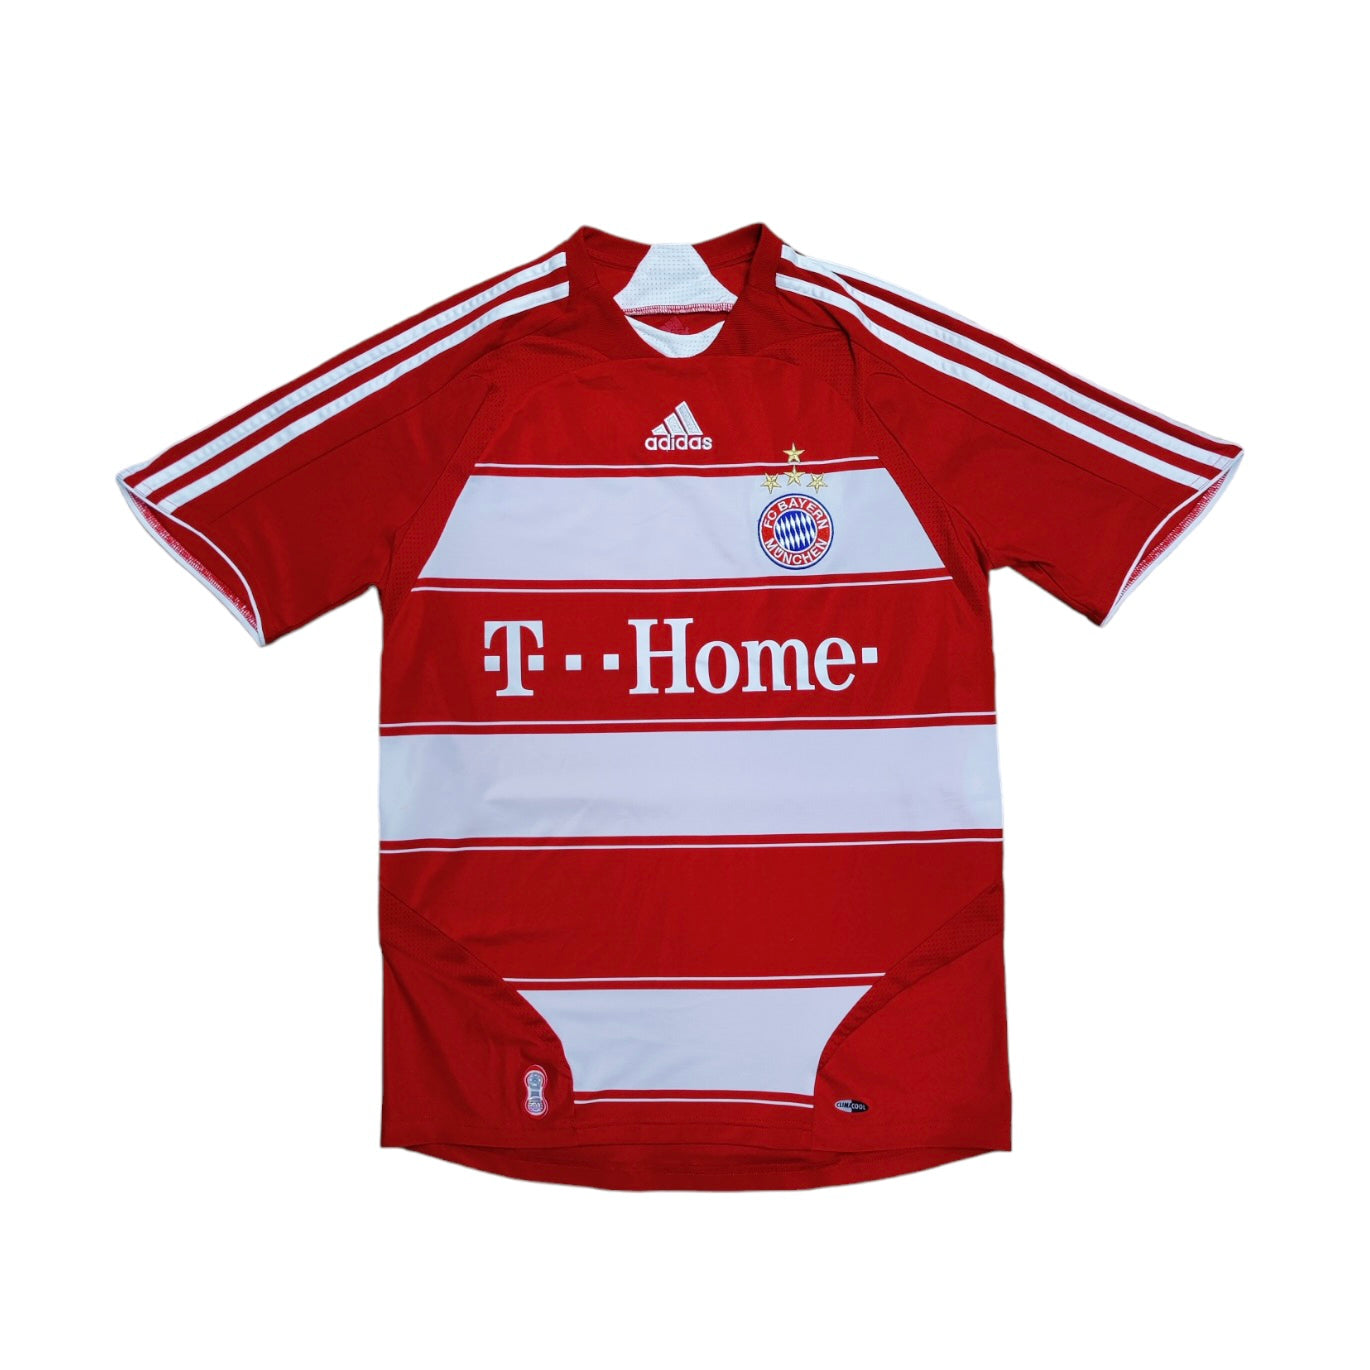 Adidas Bayern Munich 2008/2009 Home Football Jersey